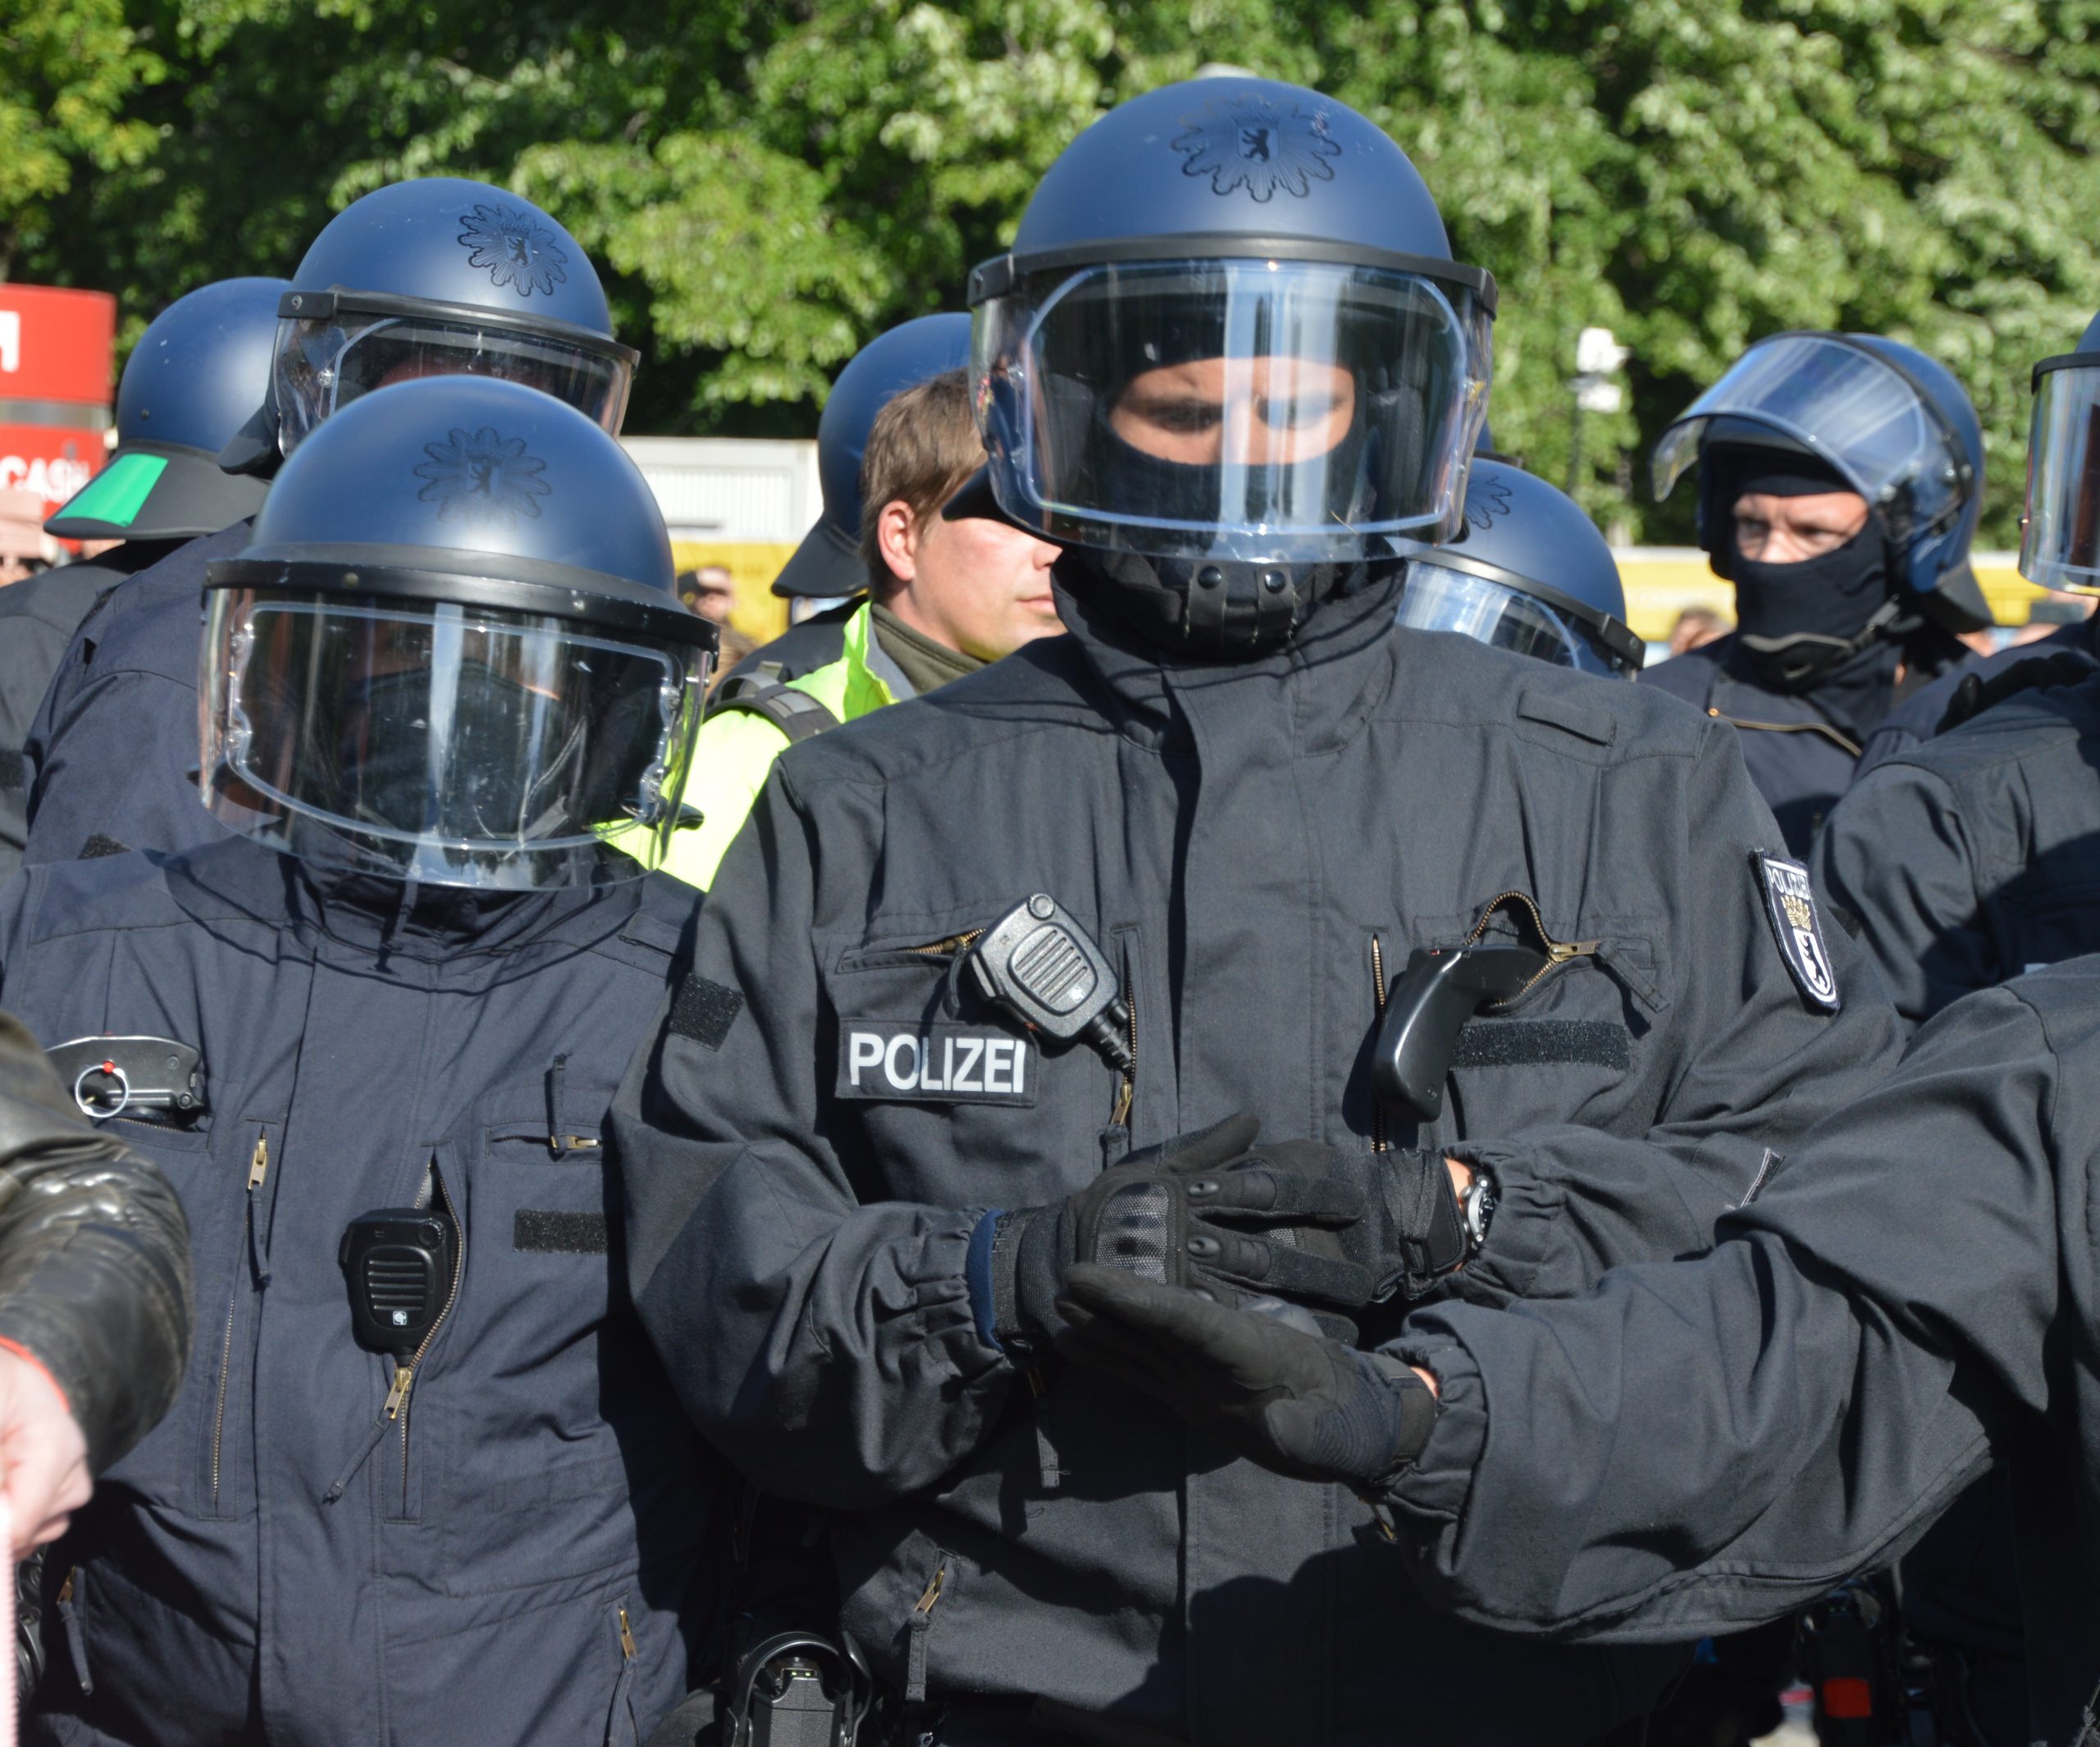 Mehrere Bullen in Riot-Ausrüstung mit Helm und heruntergelassenem Visier, sowie Funkgerät und Reizstoffgerät/Pfeffer